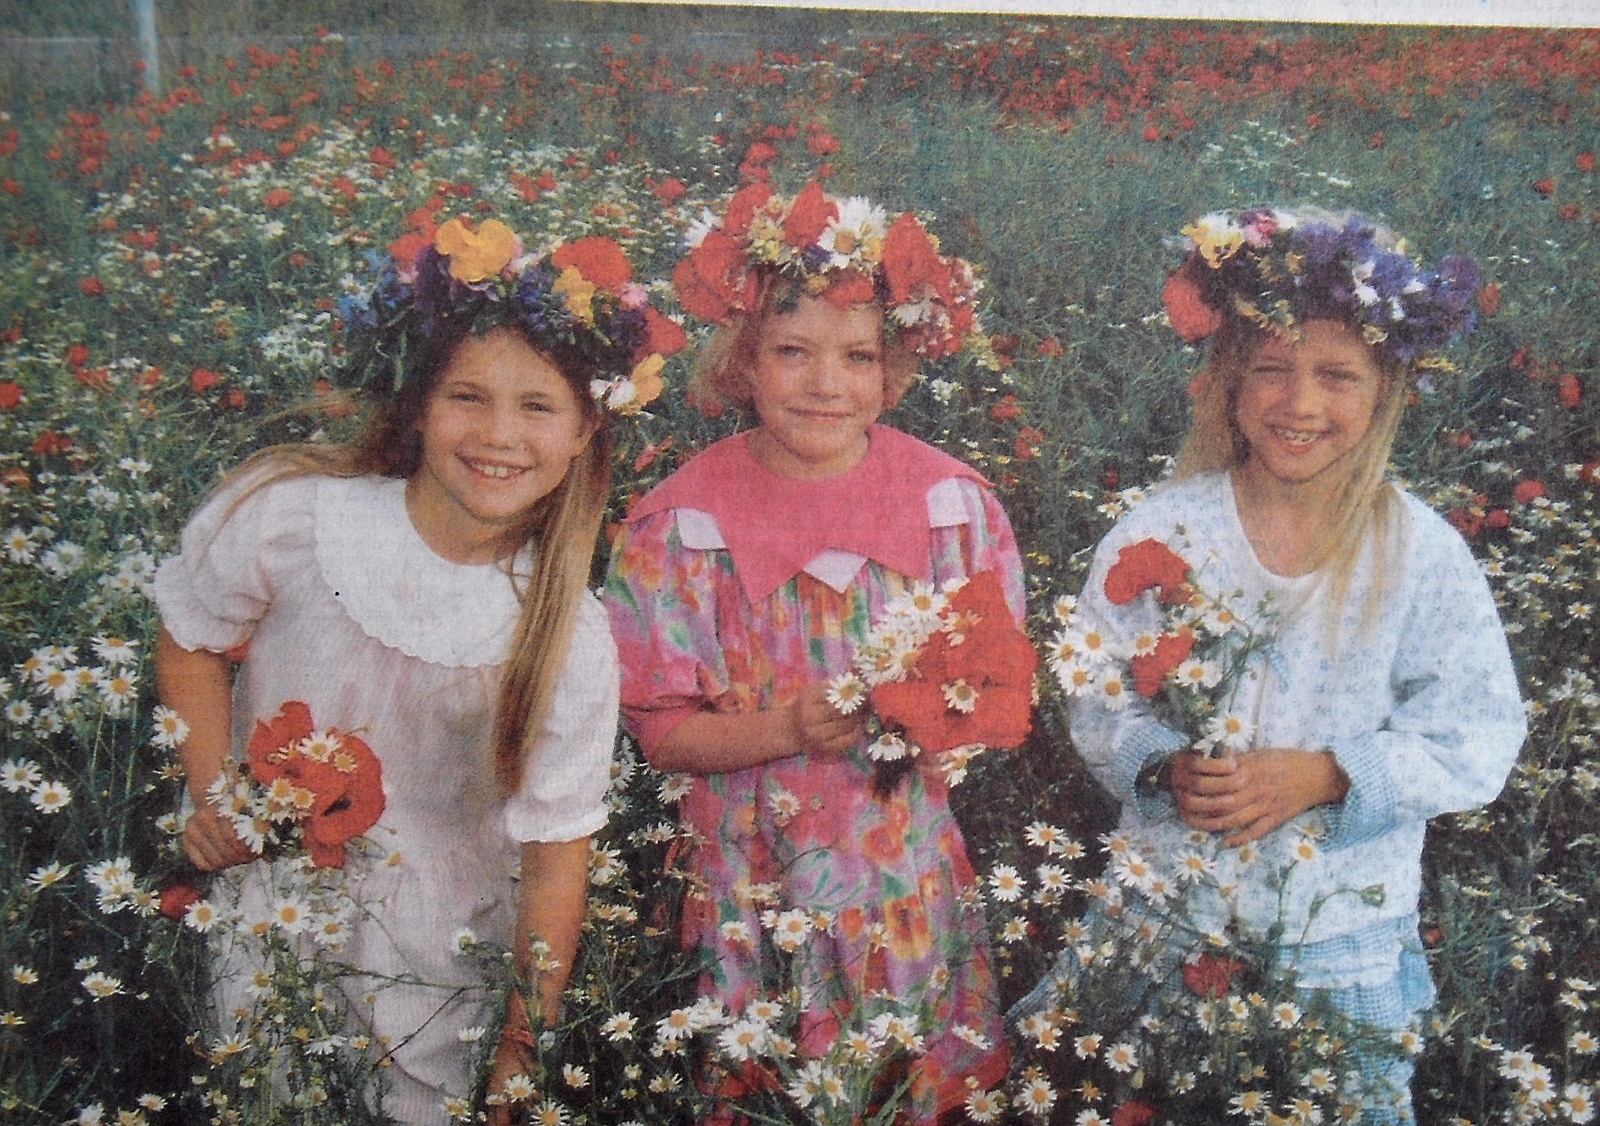 Till midsommar ska du plocka blommor och binda en krans. Det är just vad Sofie, Diana och Pernilla gör. 
Arkiv: Åke Ljungberg